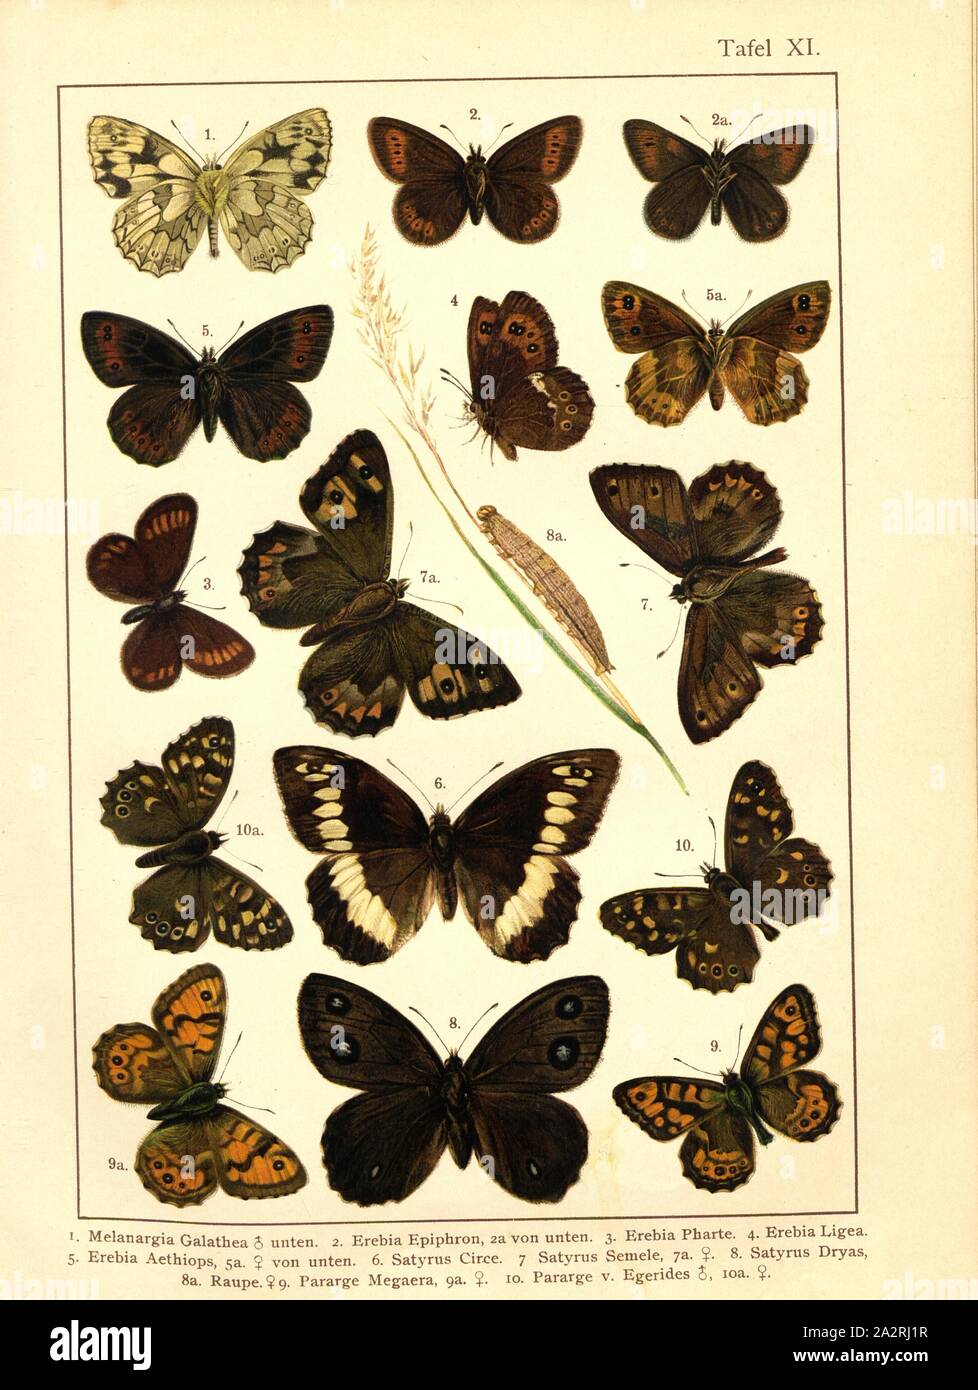 Butterflies and caterpillars in Central Europe 3, Melanargia Galathea, Erebia Epiphron, Erebia Pharte, Erebia Ligea, Erebia Aethiops, Satirus Circe, Satyrus Semele, Satyrus Dryas, Pararge Megaera, Pararge v. Chr., Egerides, pl. XI, after p. 40, Deuchert, Heinrich (del. ad. nat.); Slocombe, A. (del. ad nat.), 1893, Max Korb; Heinrich Deuchert; A. Slocombe: Die Schmetterlinge Mittel-Europas: Darstellung und Beschreibung der hauptsächlichen mitteleuropäischen Schmetterlinge nebst Anleitung, dieselben zu fangen oder zu züchten und eine Sammlung anzulegen. Nürnberg: Theo. Stroeser's Kunstverlag, [ Stock Photo